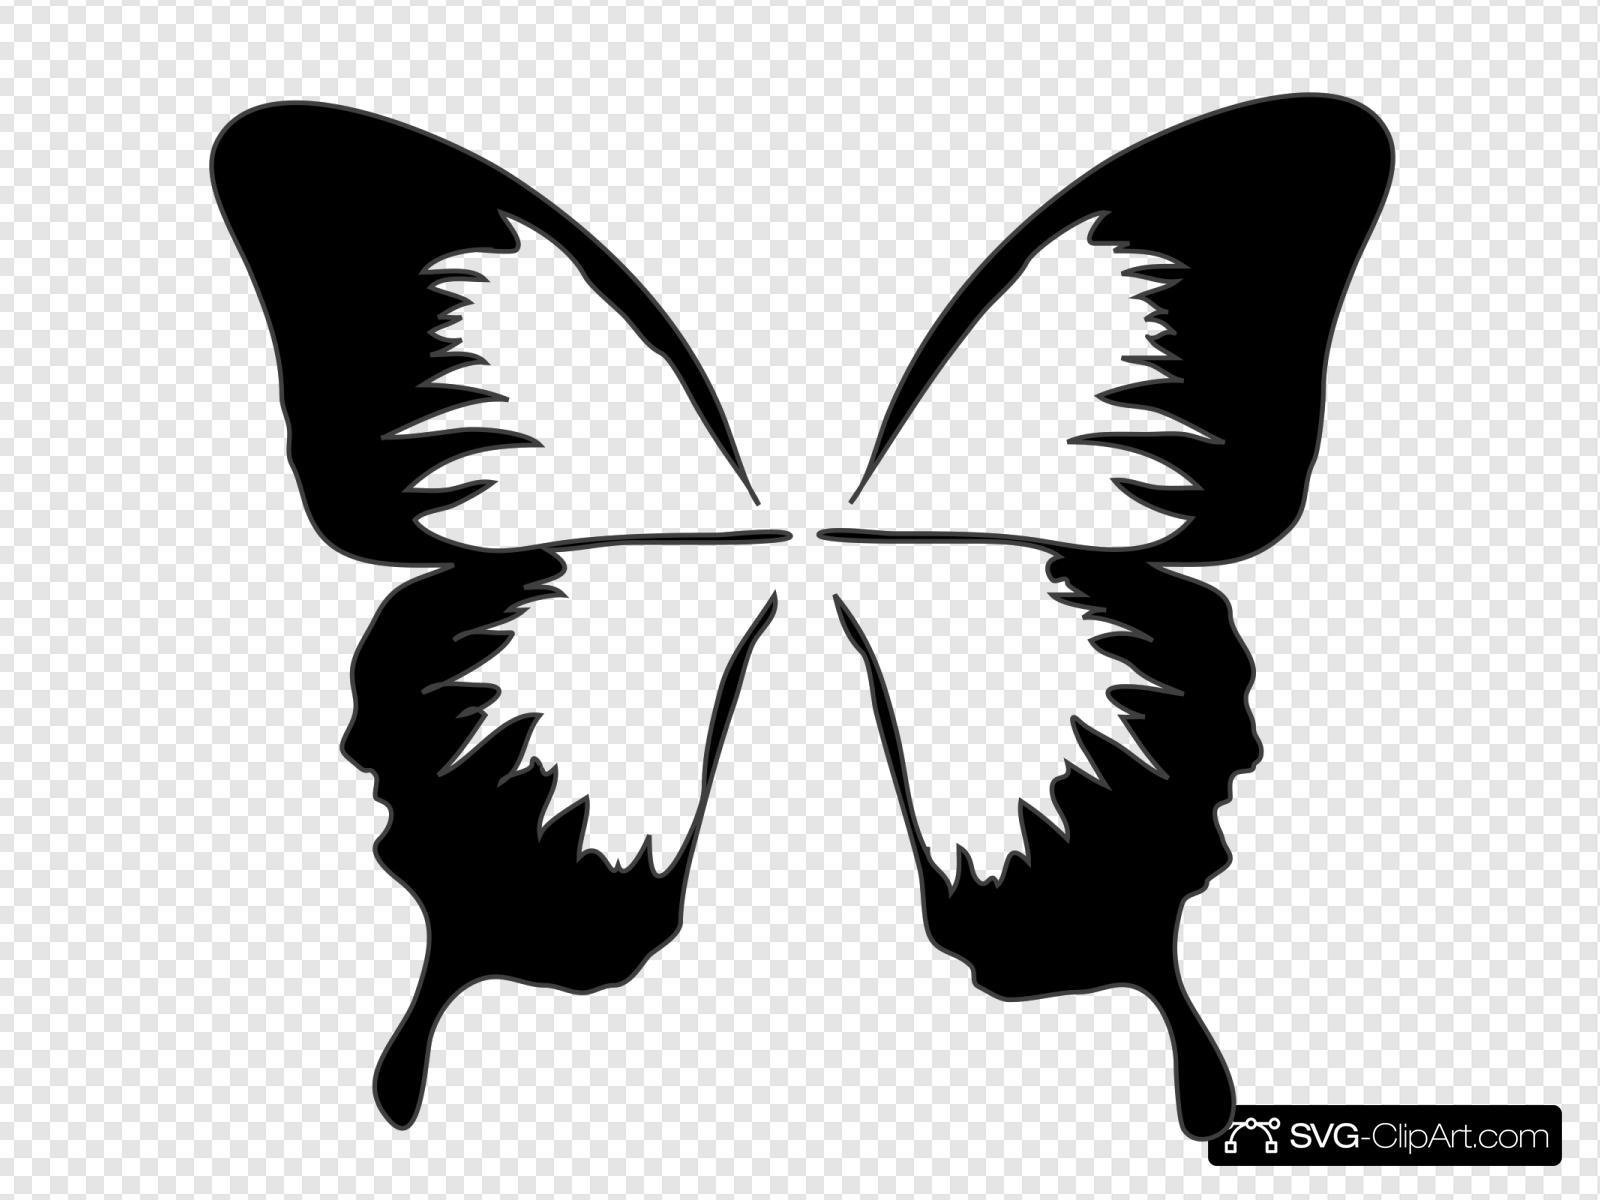 Без цветной рисунок. Трафареты бабочки. Силуэт бабочки. Бабочки на белом фоне. Бабочка контур.